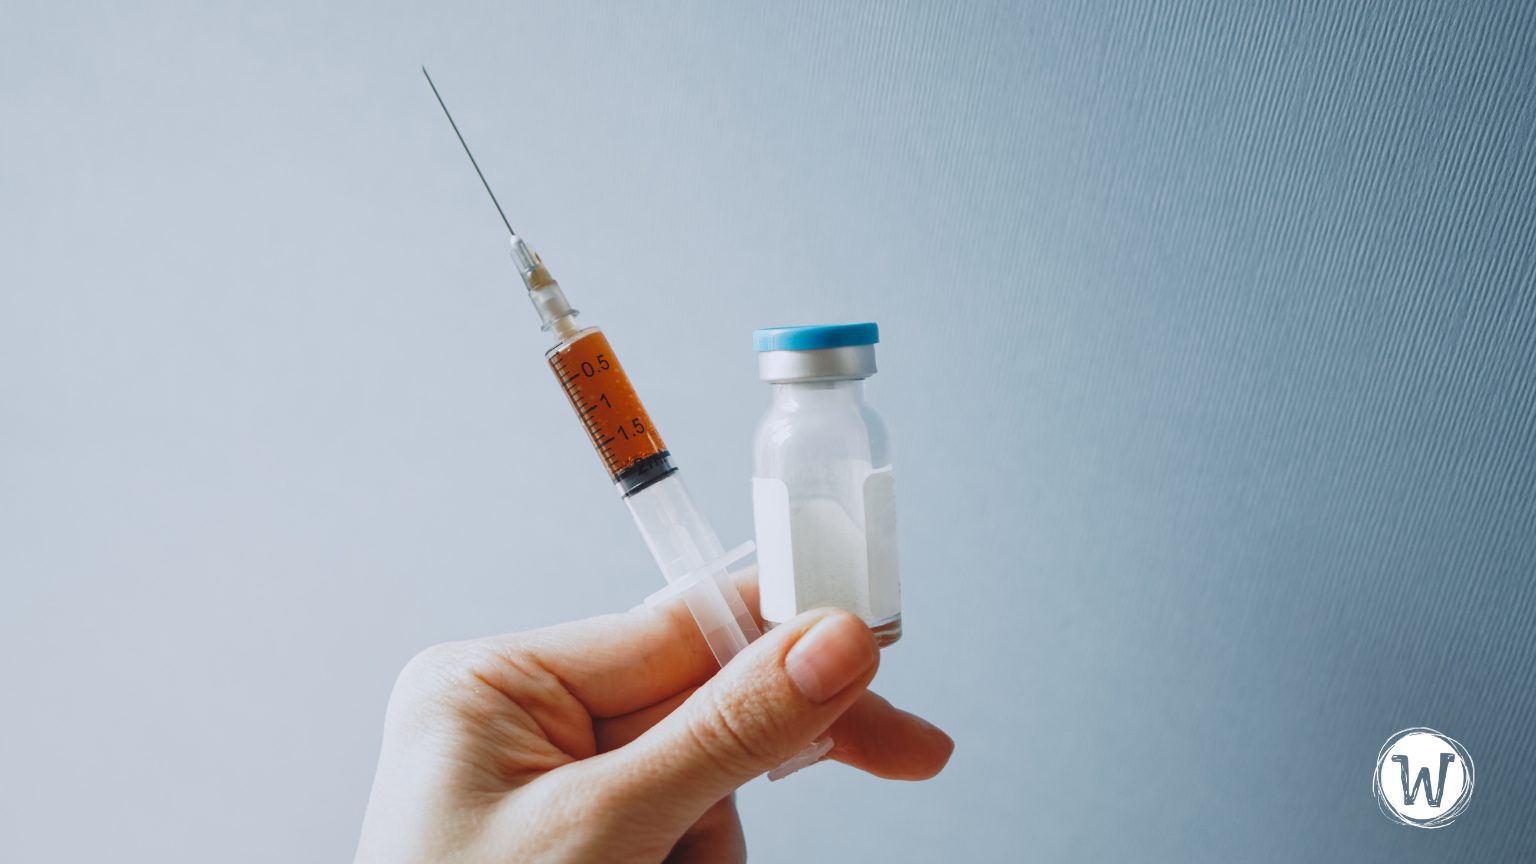 Cagayan de Oro City Hall orders 100,000 doses of Covovax vaccine